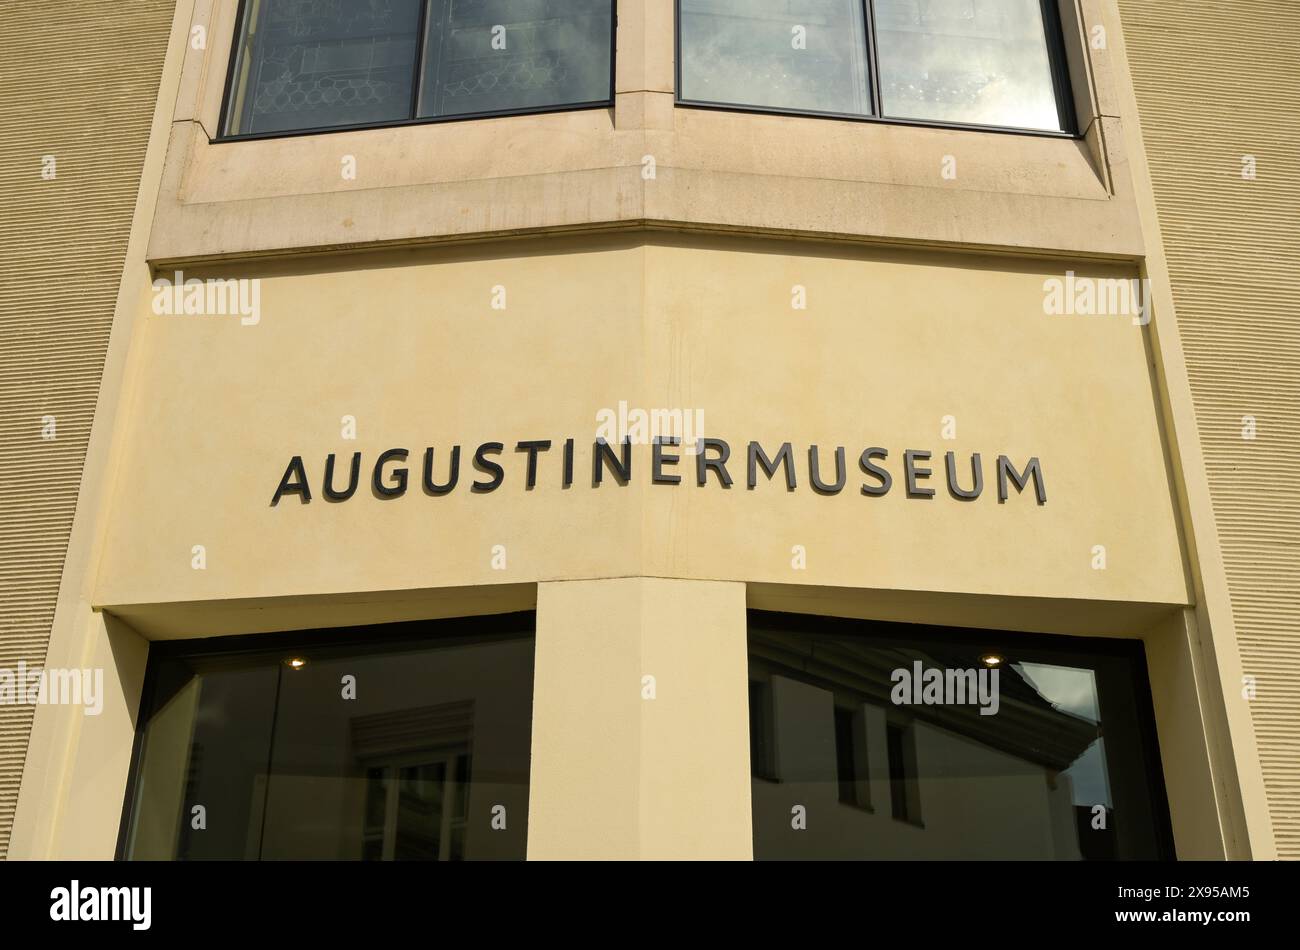 Augustinermuseum, Augustinerplatz, Freiburg im Breisgau, Baden-Württemberg, Germany, Augustinermuseum, Augustinerplatz, Freiburg im Breisgau, Baden-Wü Stock Photo